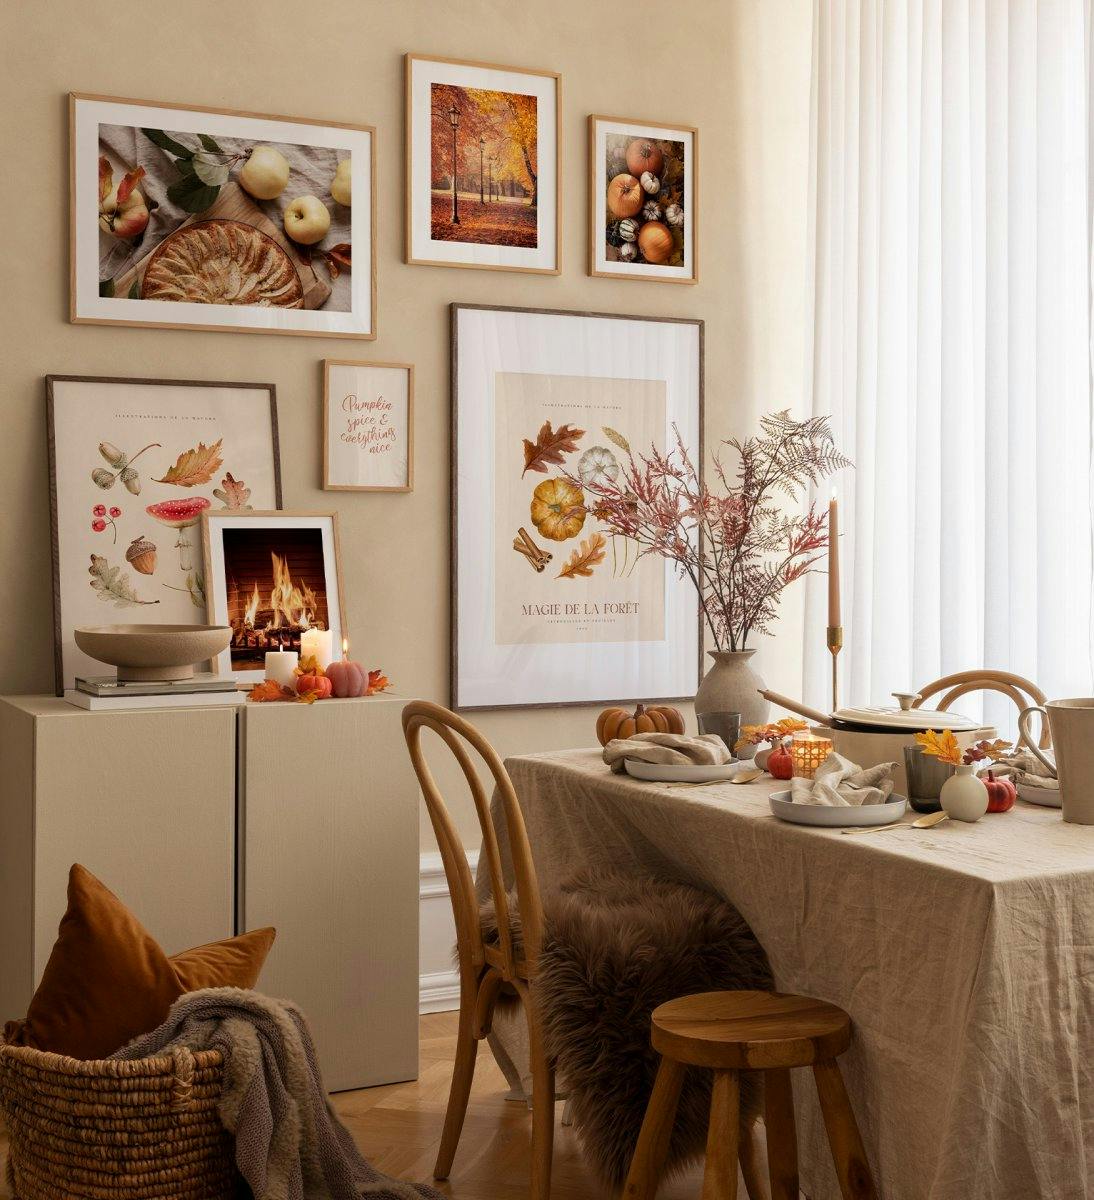 Verleihe deinem Wohnzimmer eine gemütliche Atmosphäre mit dieser Bilderwand in wunderschönen Eichenrahmen!